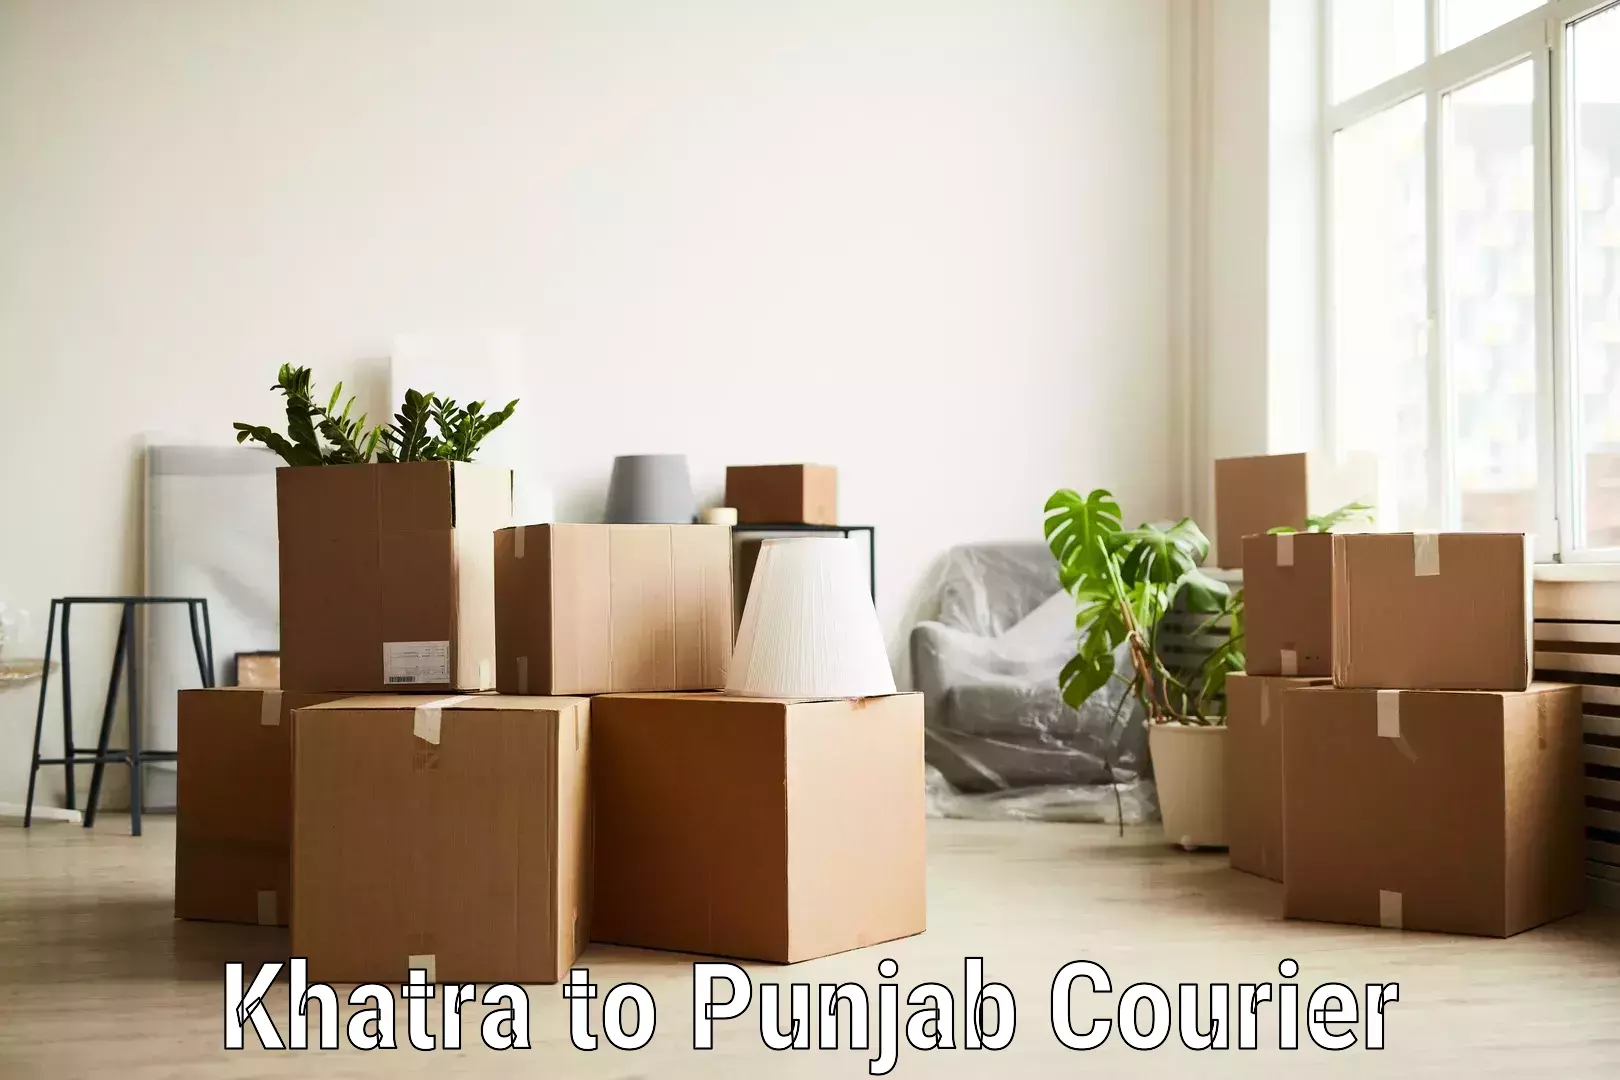 Premium courier services Khatra to Pathankot